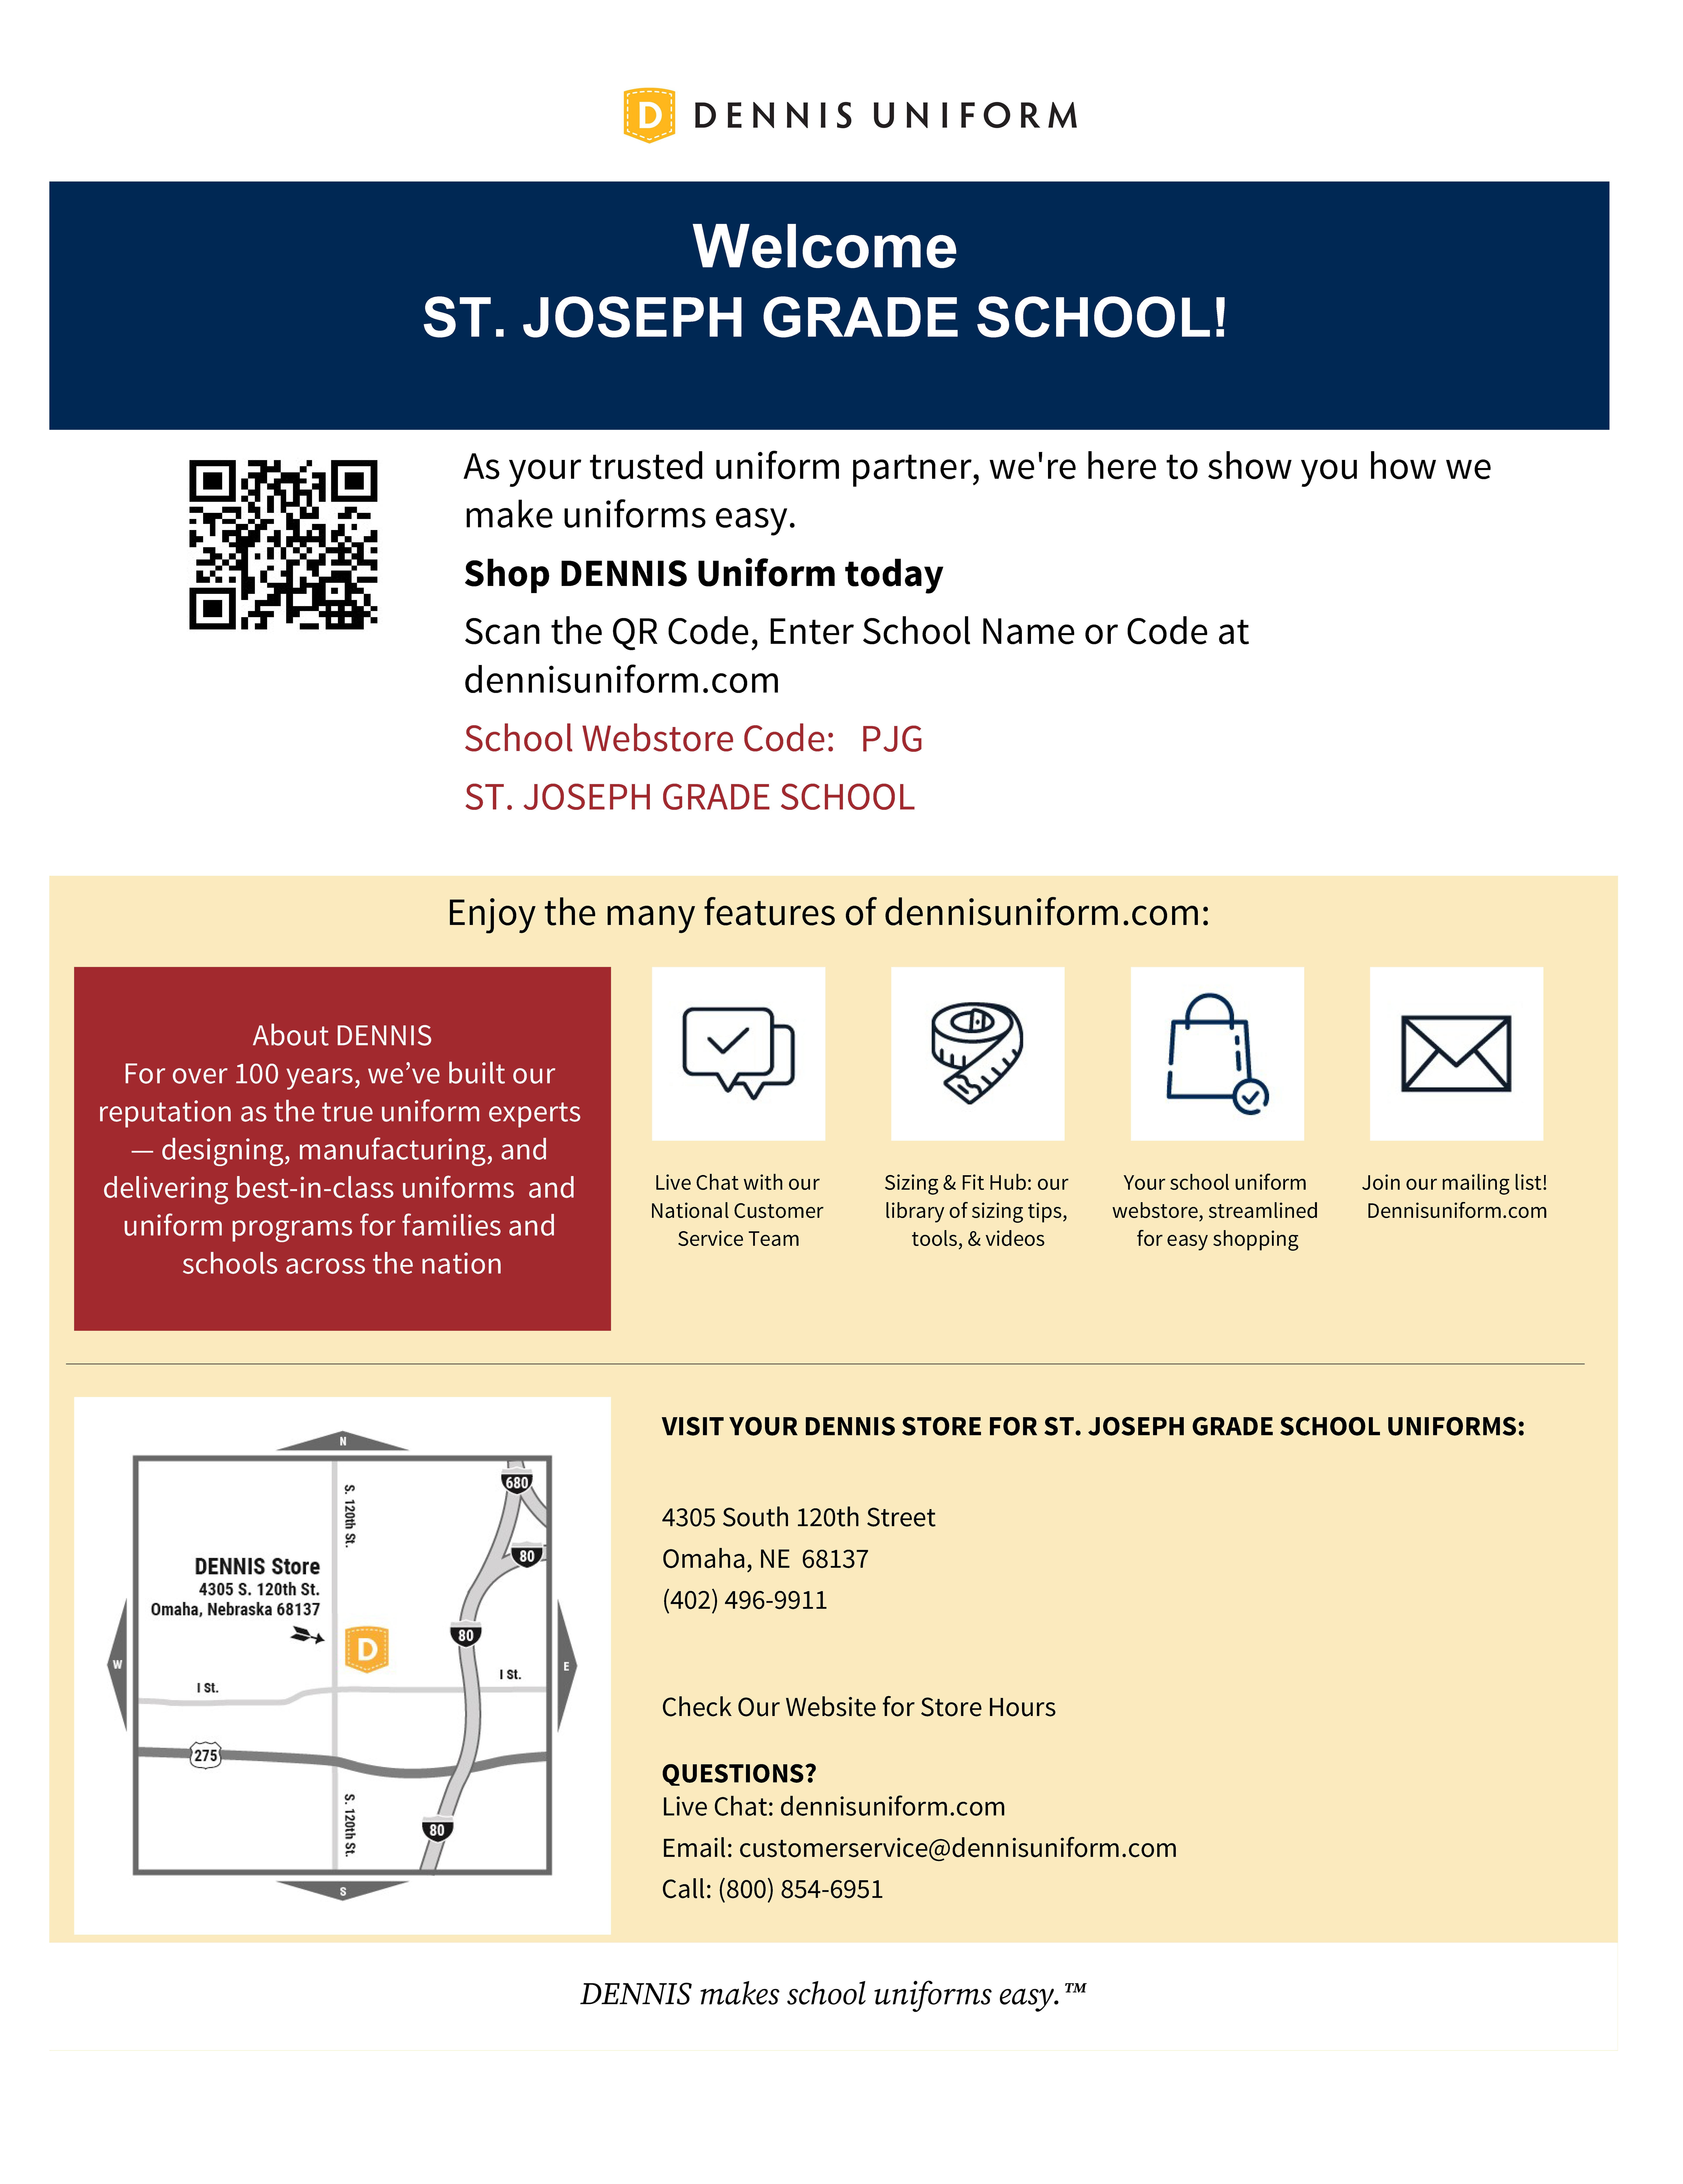 PJG St. Joseph Grade School Shopping Guide